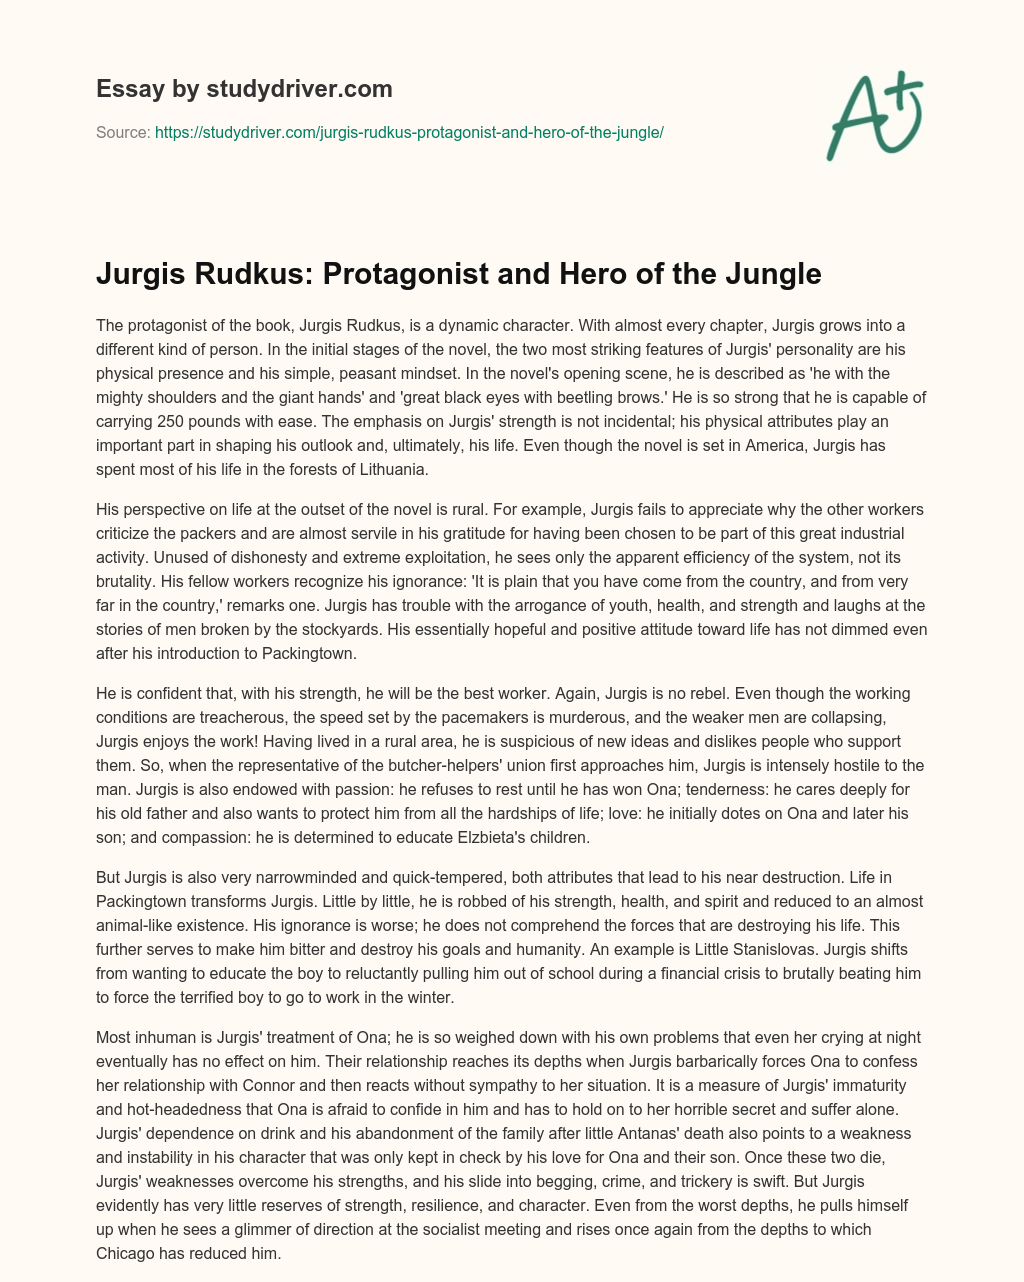 Jurgis Rudkus: Protagonist and Hero of the Jungle essay